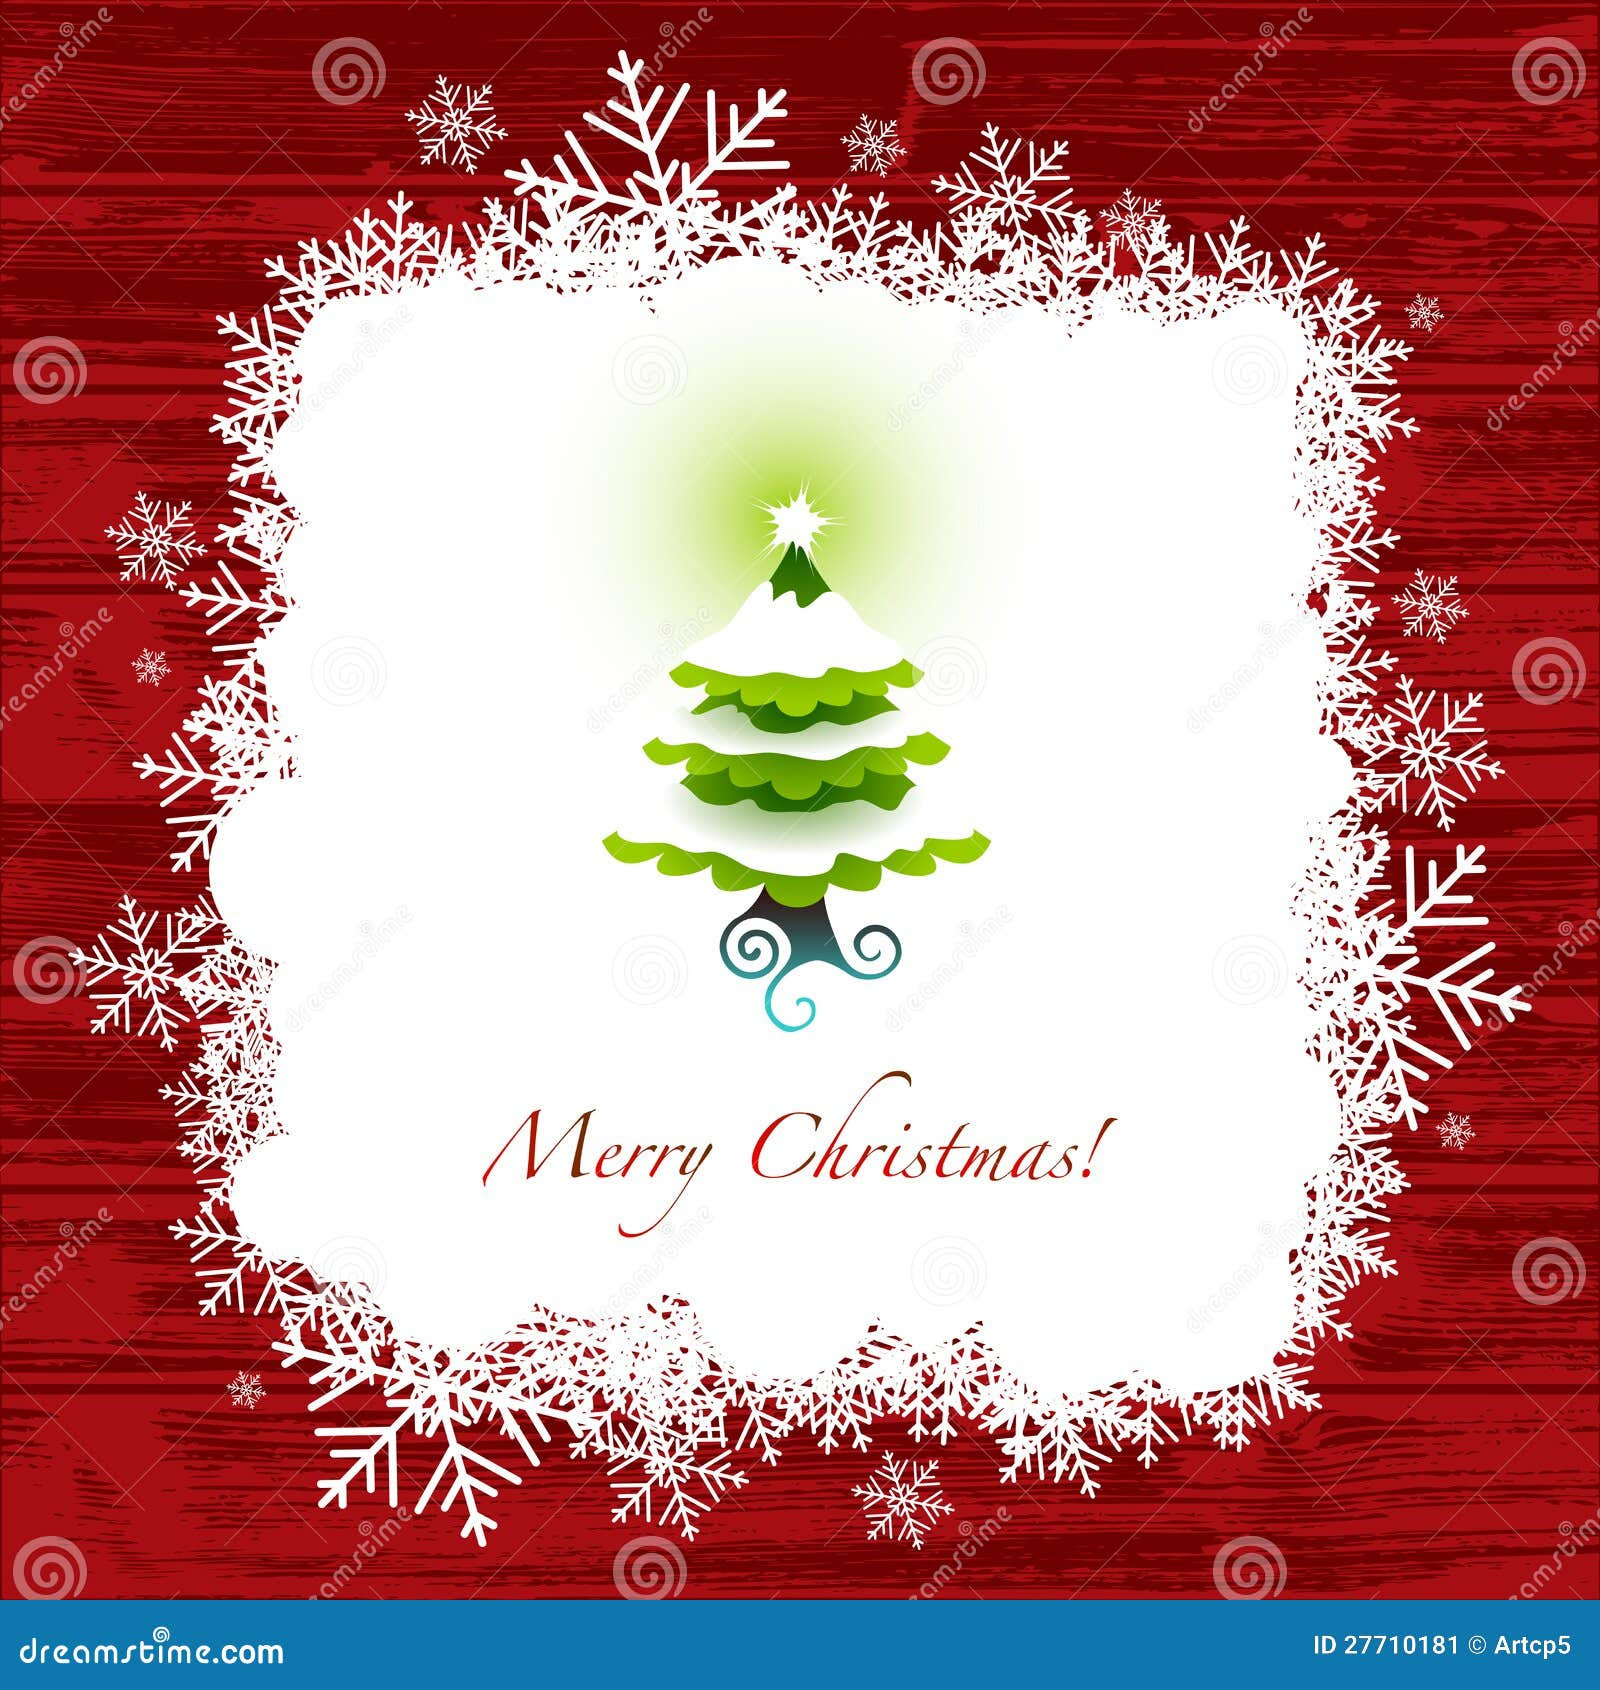 Christmas Greeting Card Stock Image - Image: 27710181